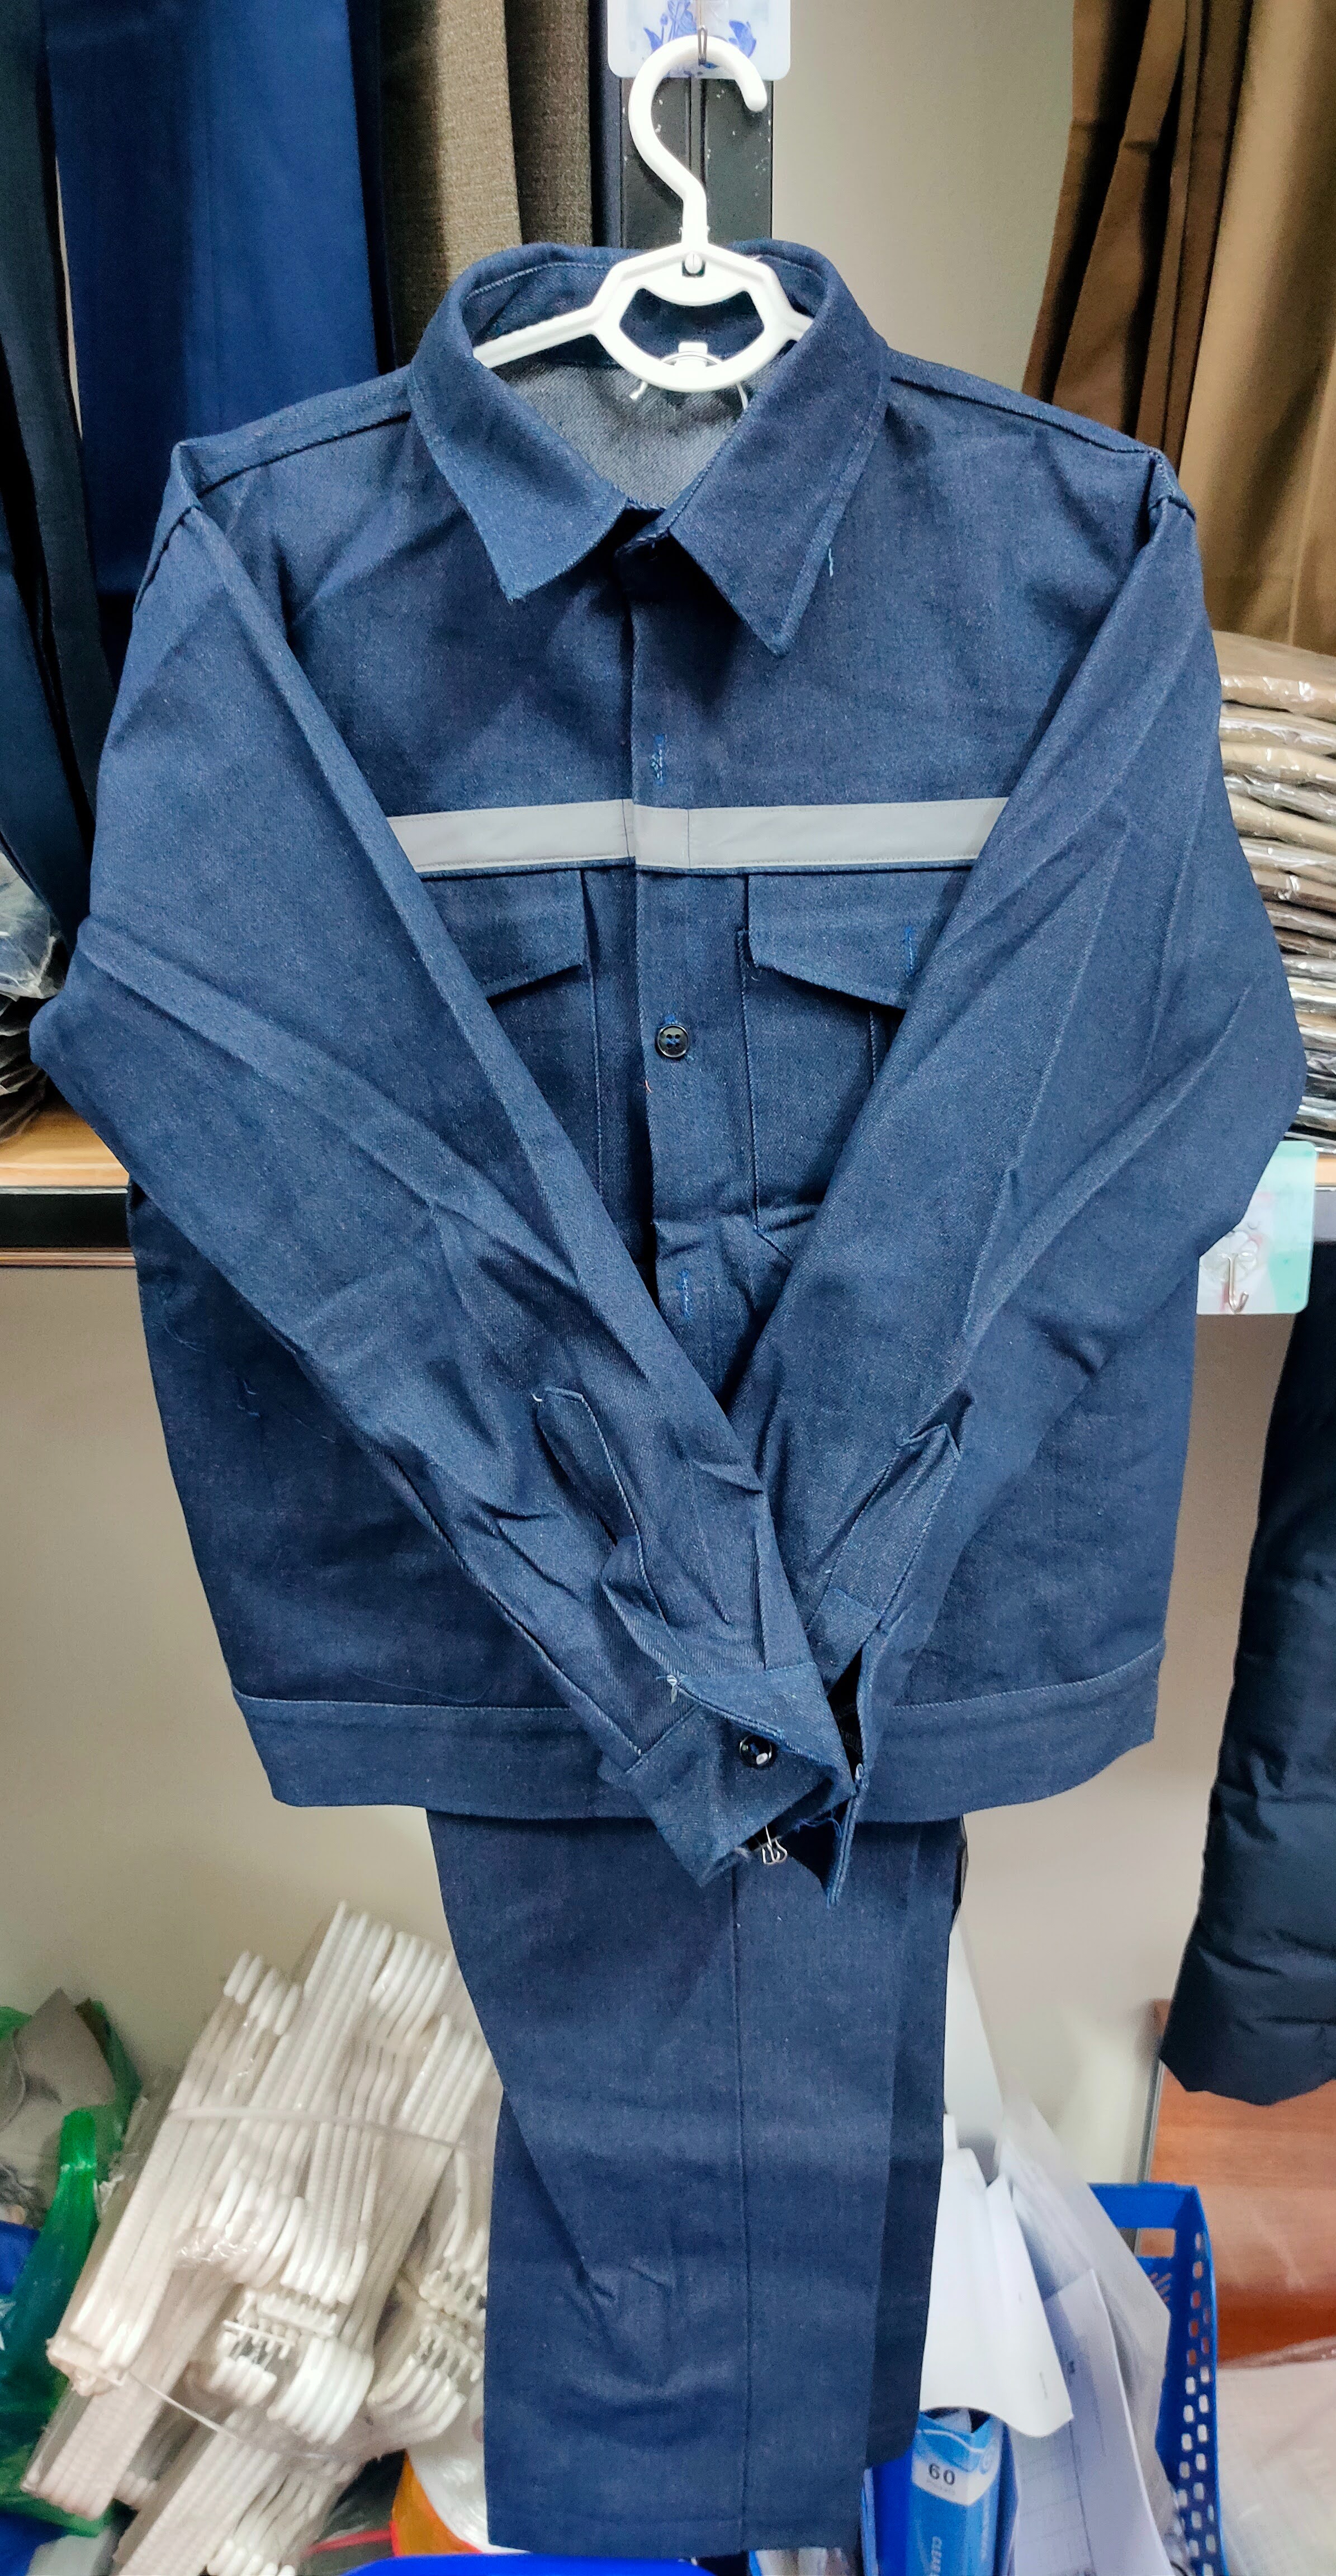 Bộ Quần áo Jean cho Thợ Hàn Cao cấp - Đủ SIZE - Chất liệu Vải bò - Có phản quang cùng Túi hộp